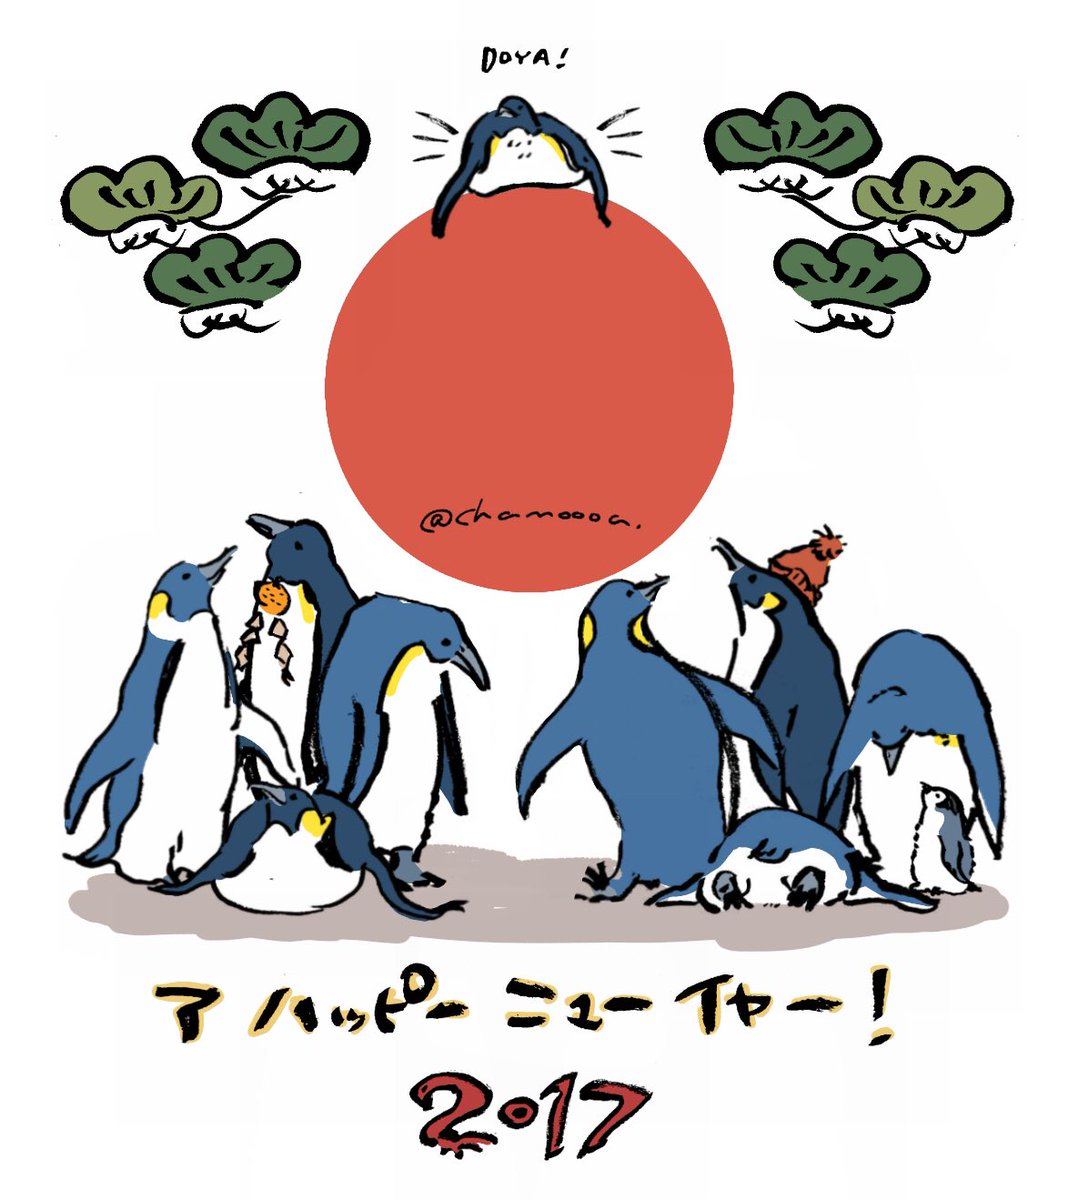 ペンギンって可愛いよね
なんでだか良くんからんけど、アイコンや年賀状の一部に描くくらいには好き!!🙈💕 